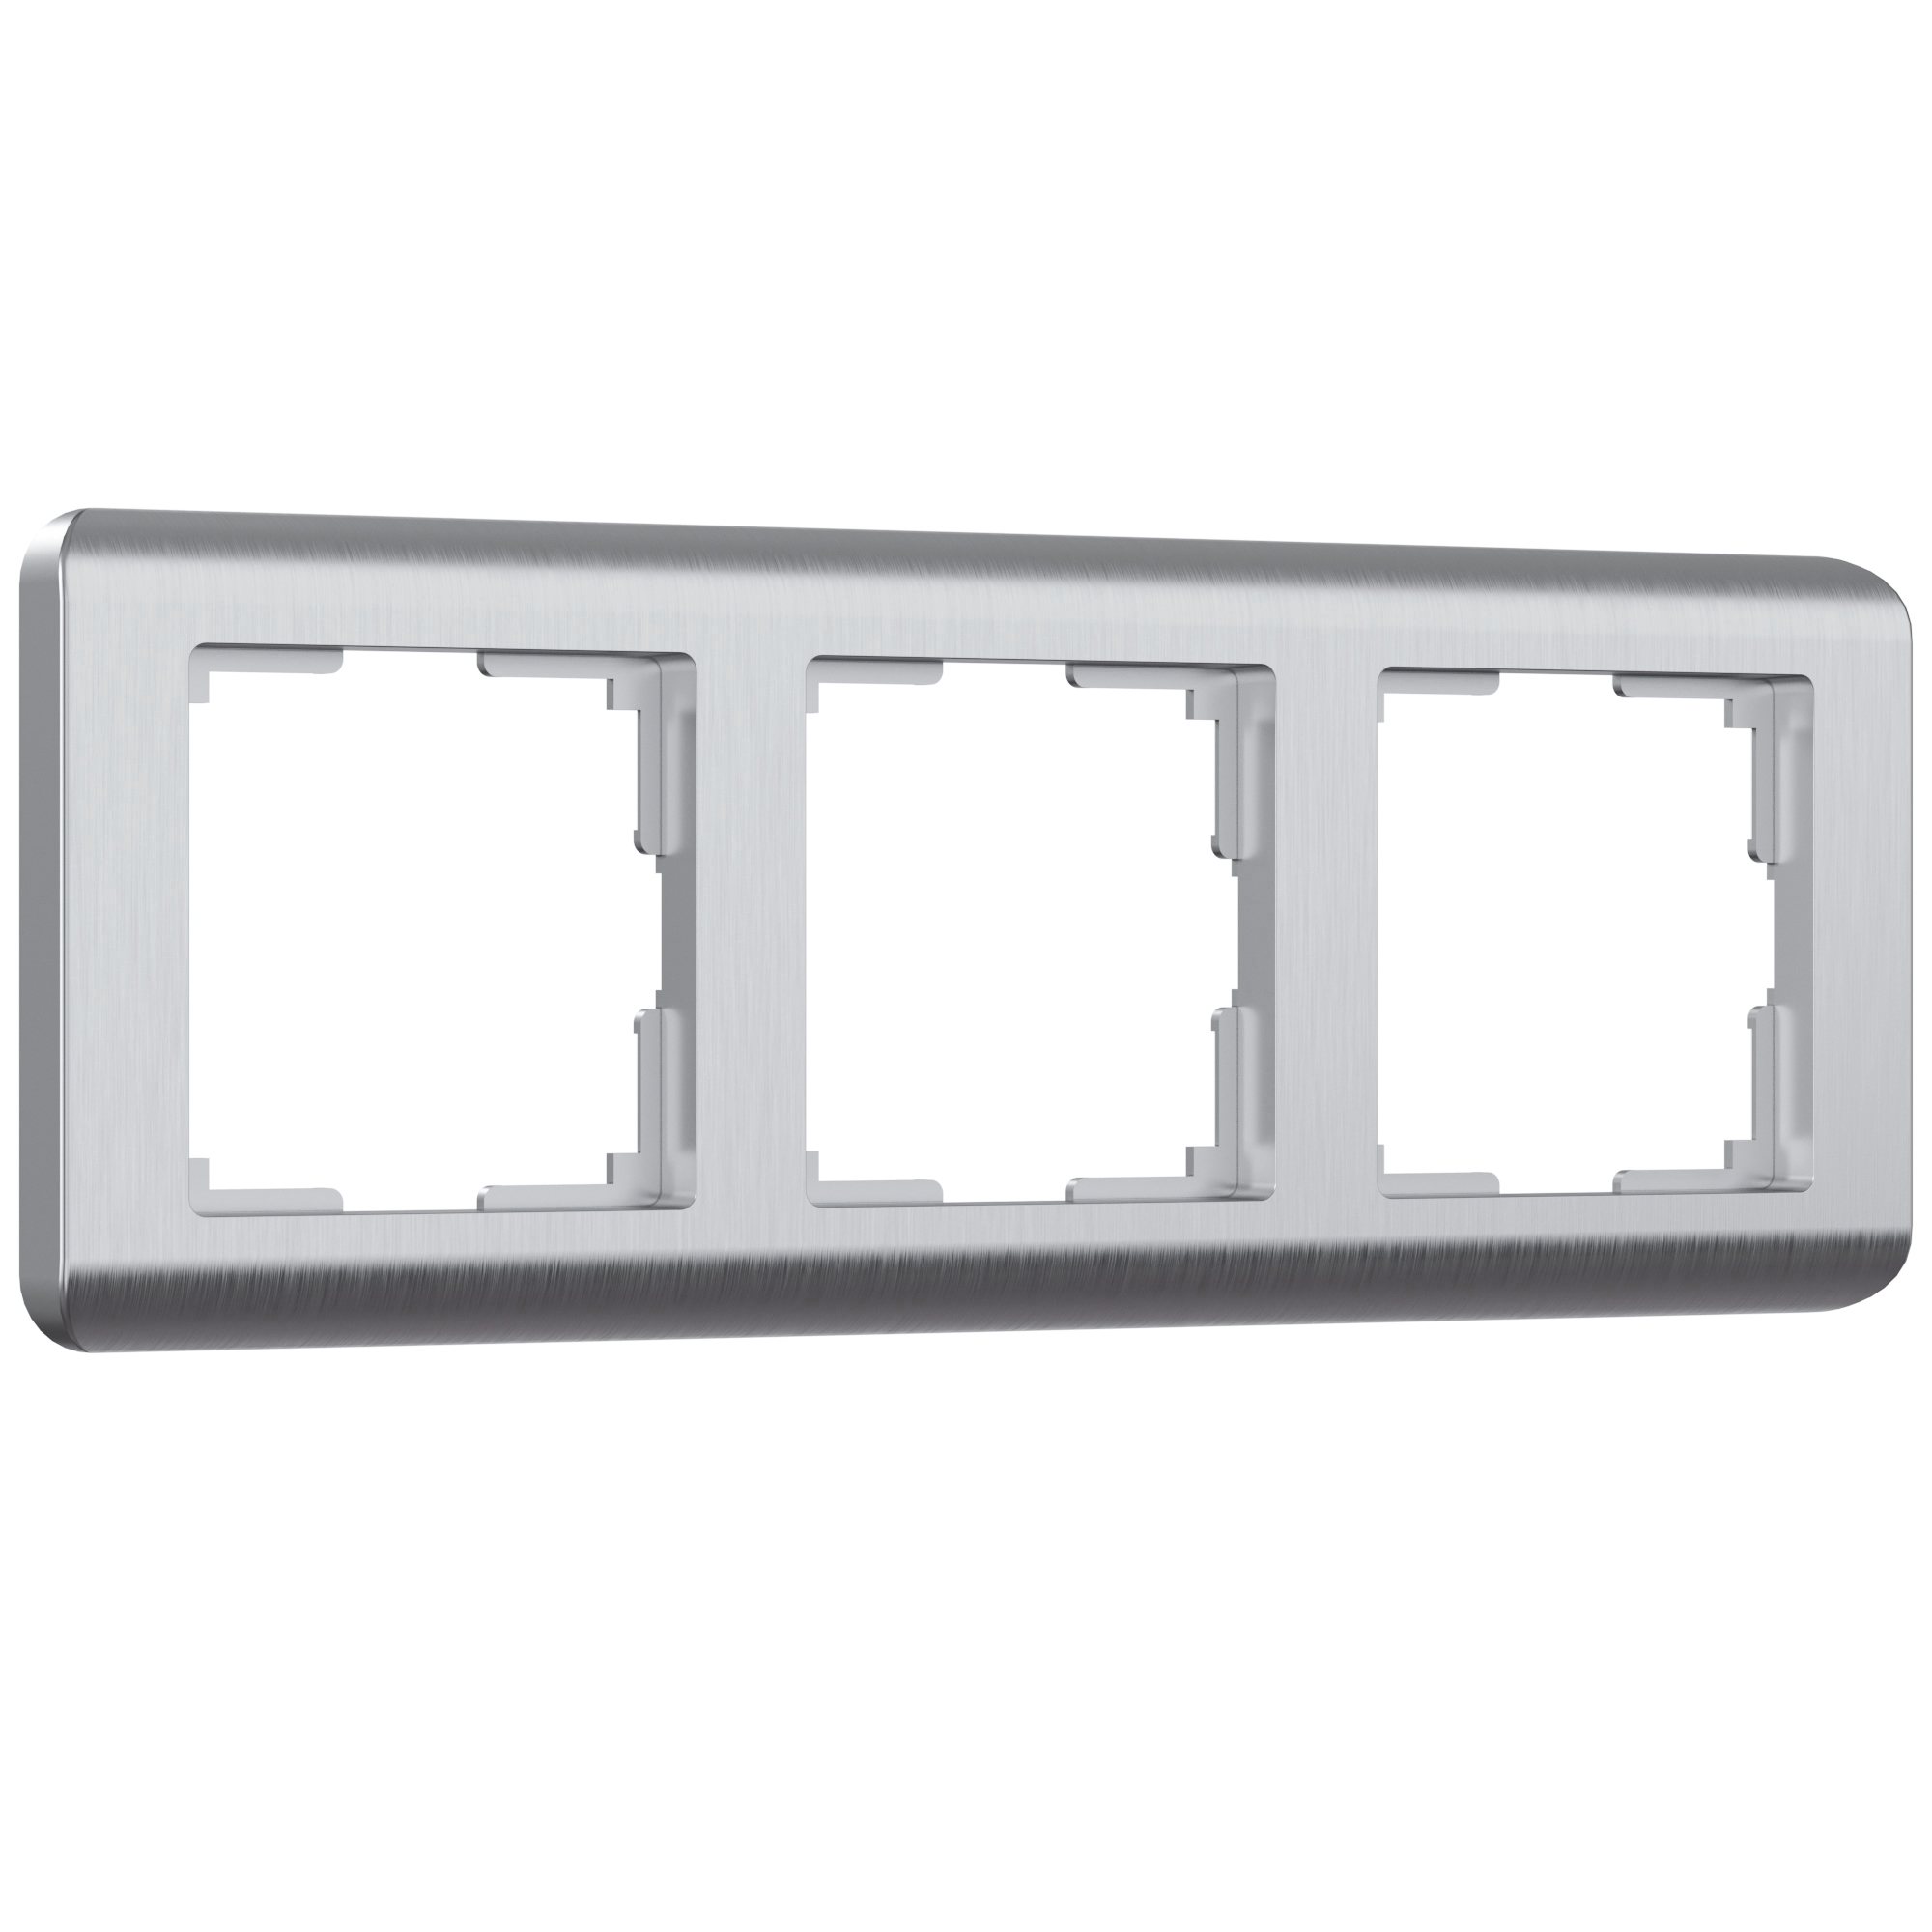 Рамка для розетки / выключателя на 3 поста Werkel W0032106 Stream серебряный пластик рамка на 4 поста графит w0042104 werkel